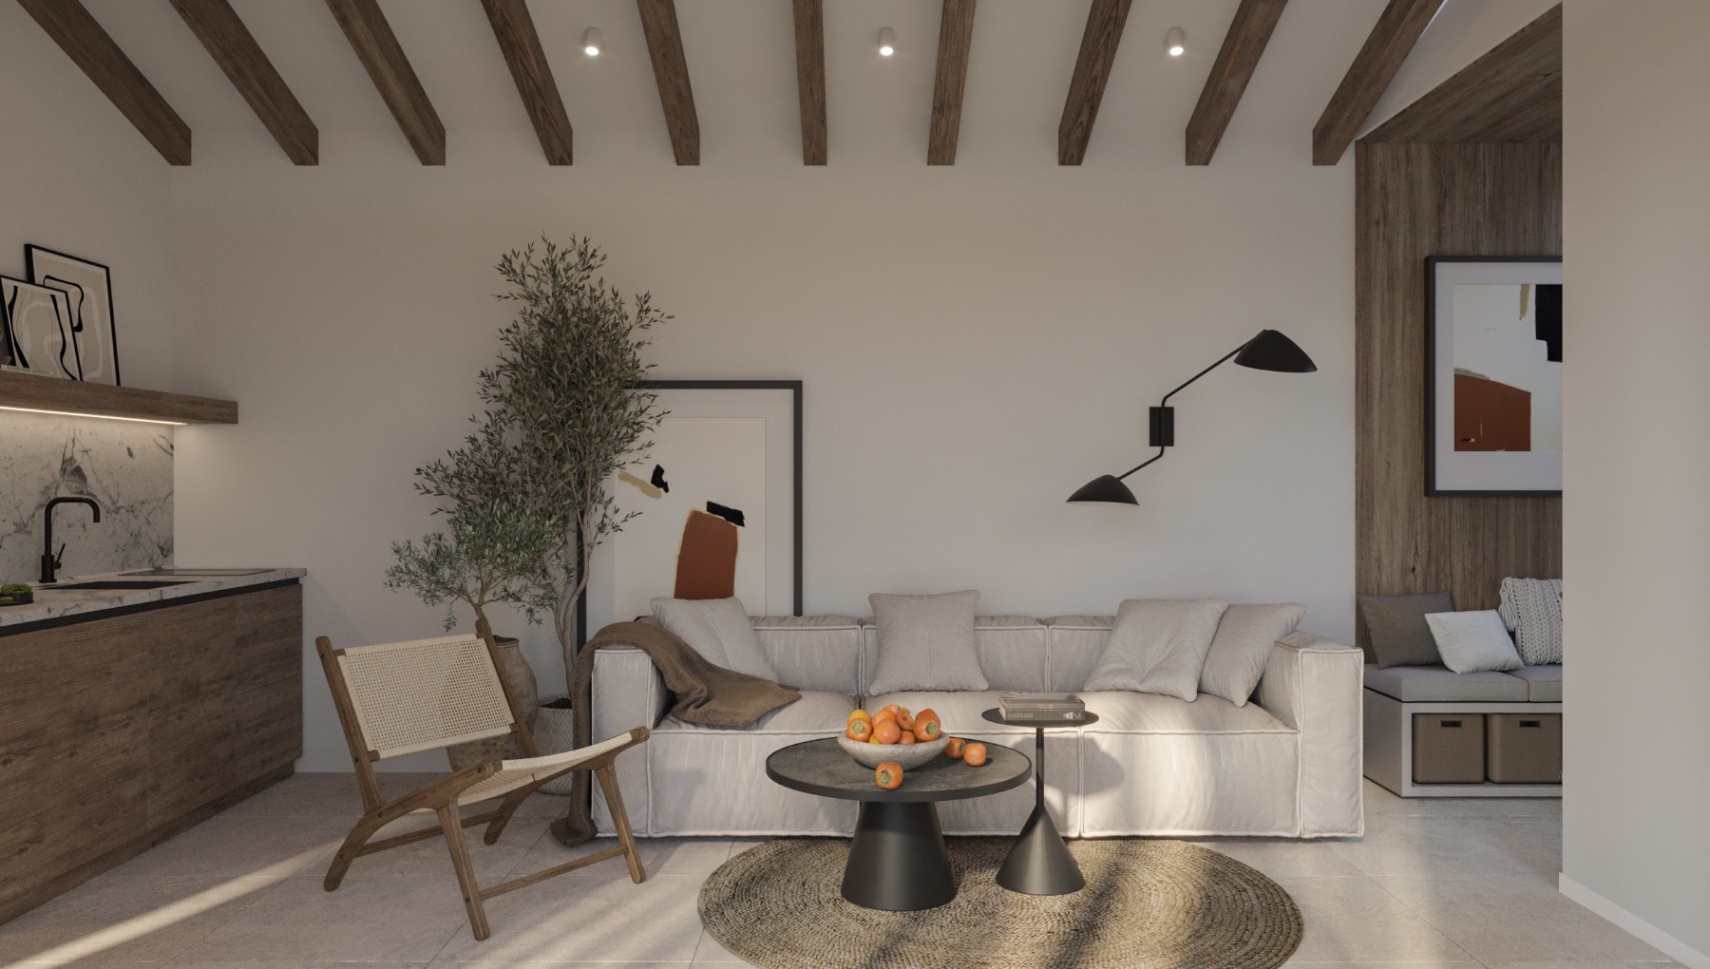 Modern, luxury villa for sale in Cumbre del Sol, Benitachell.